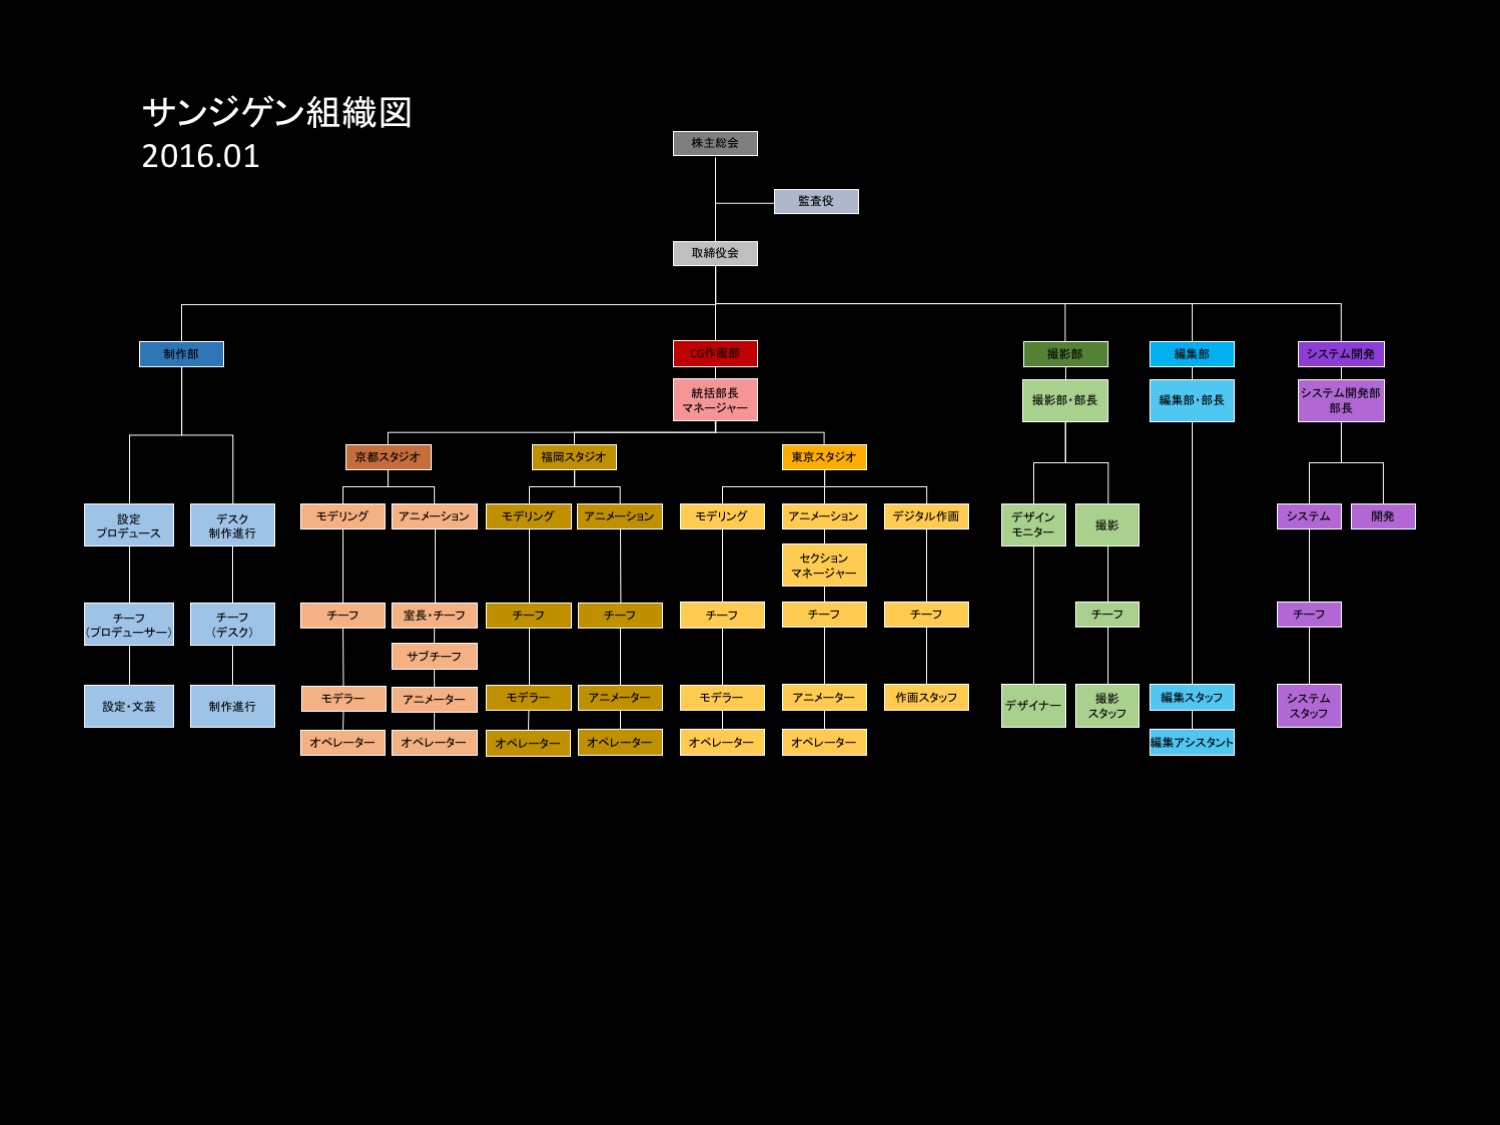 http://www.sanzigen.co.jp/business/sanzigen_chart.jpg